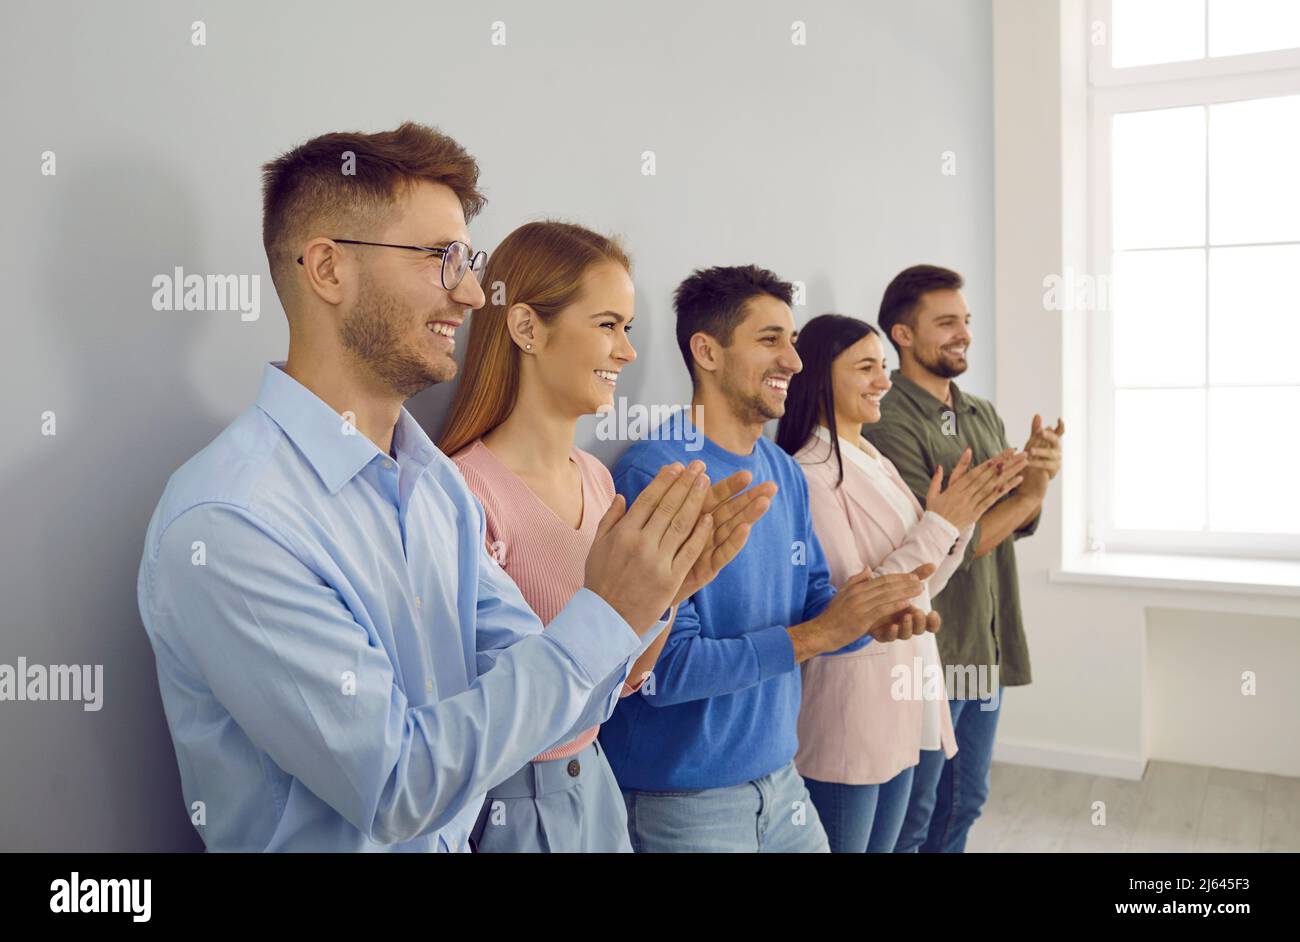 Eine Gruppe glücklicher junger Menschen applaudiert auf einer Geschäftskonferenz oder einem Teamtreffen. Stockfoto